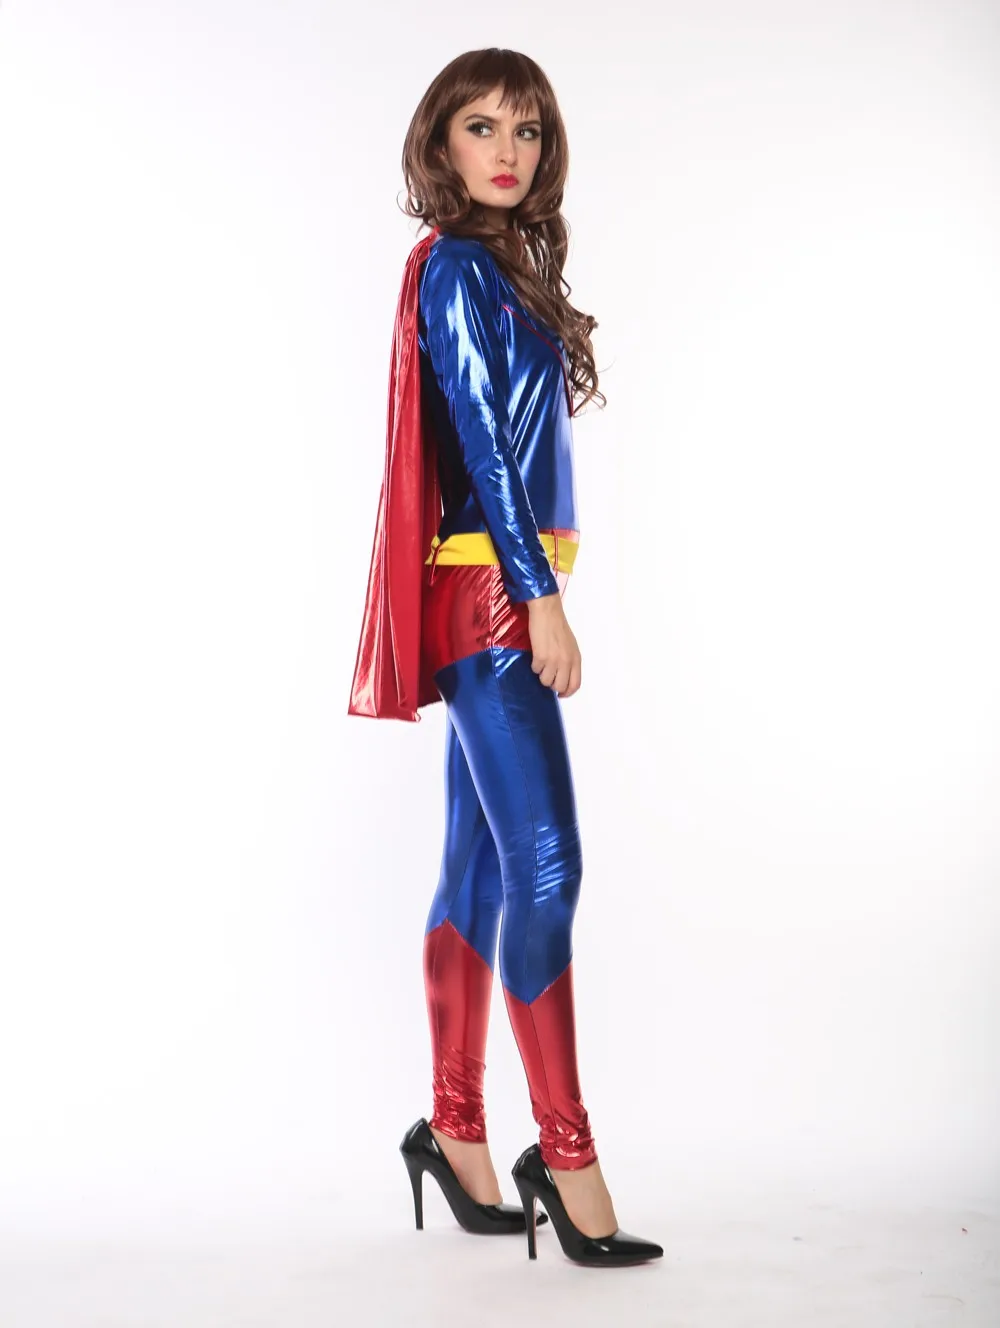 Naughty supergirl costume